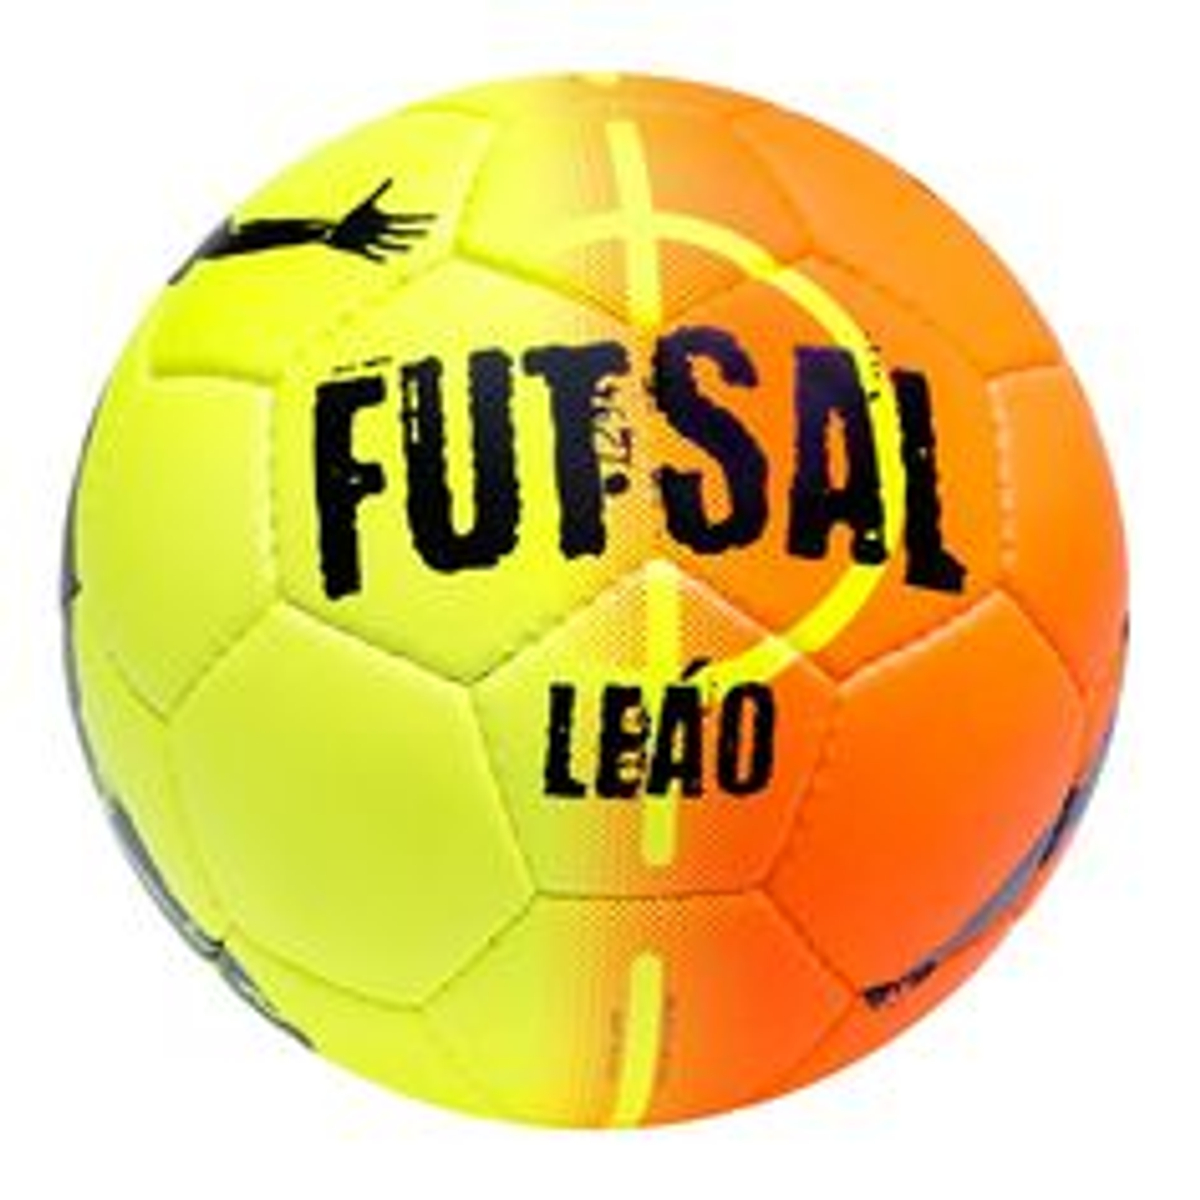 Select Futsal Leao